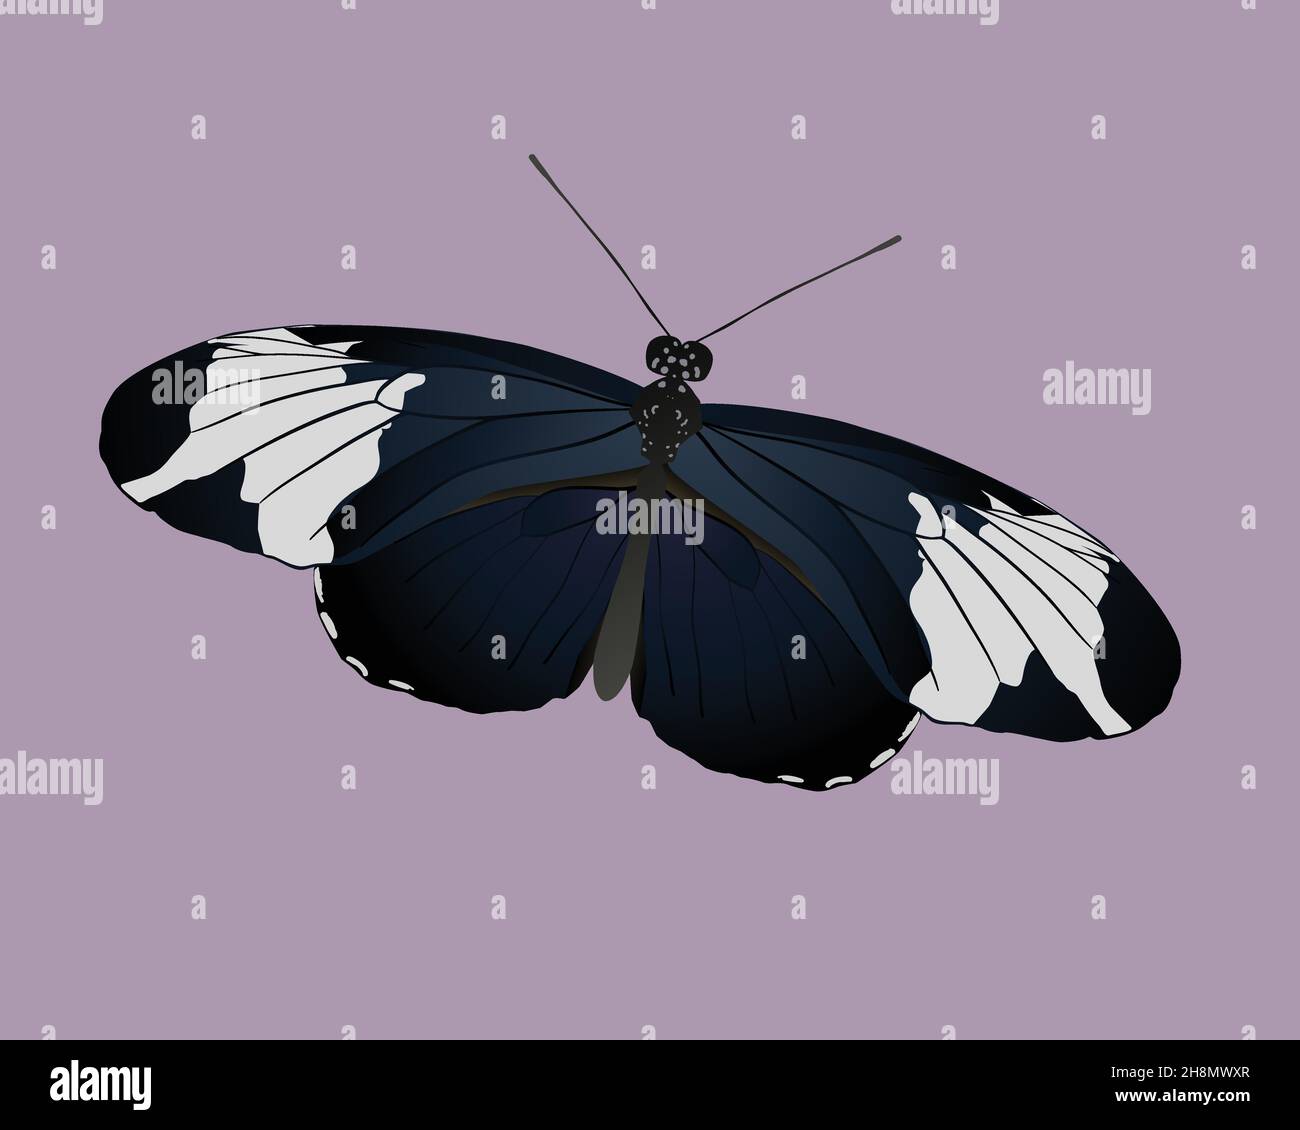 Illustration vectorielle d'un papillon à longue aile sapho.L'insecte est représenté sur un fond violet et légèrement incliné. Illustration de Vecteur